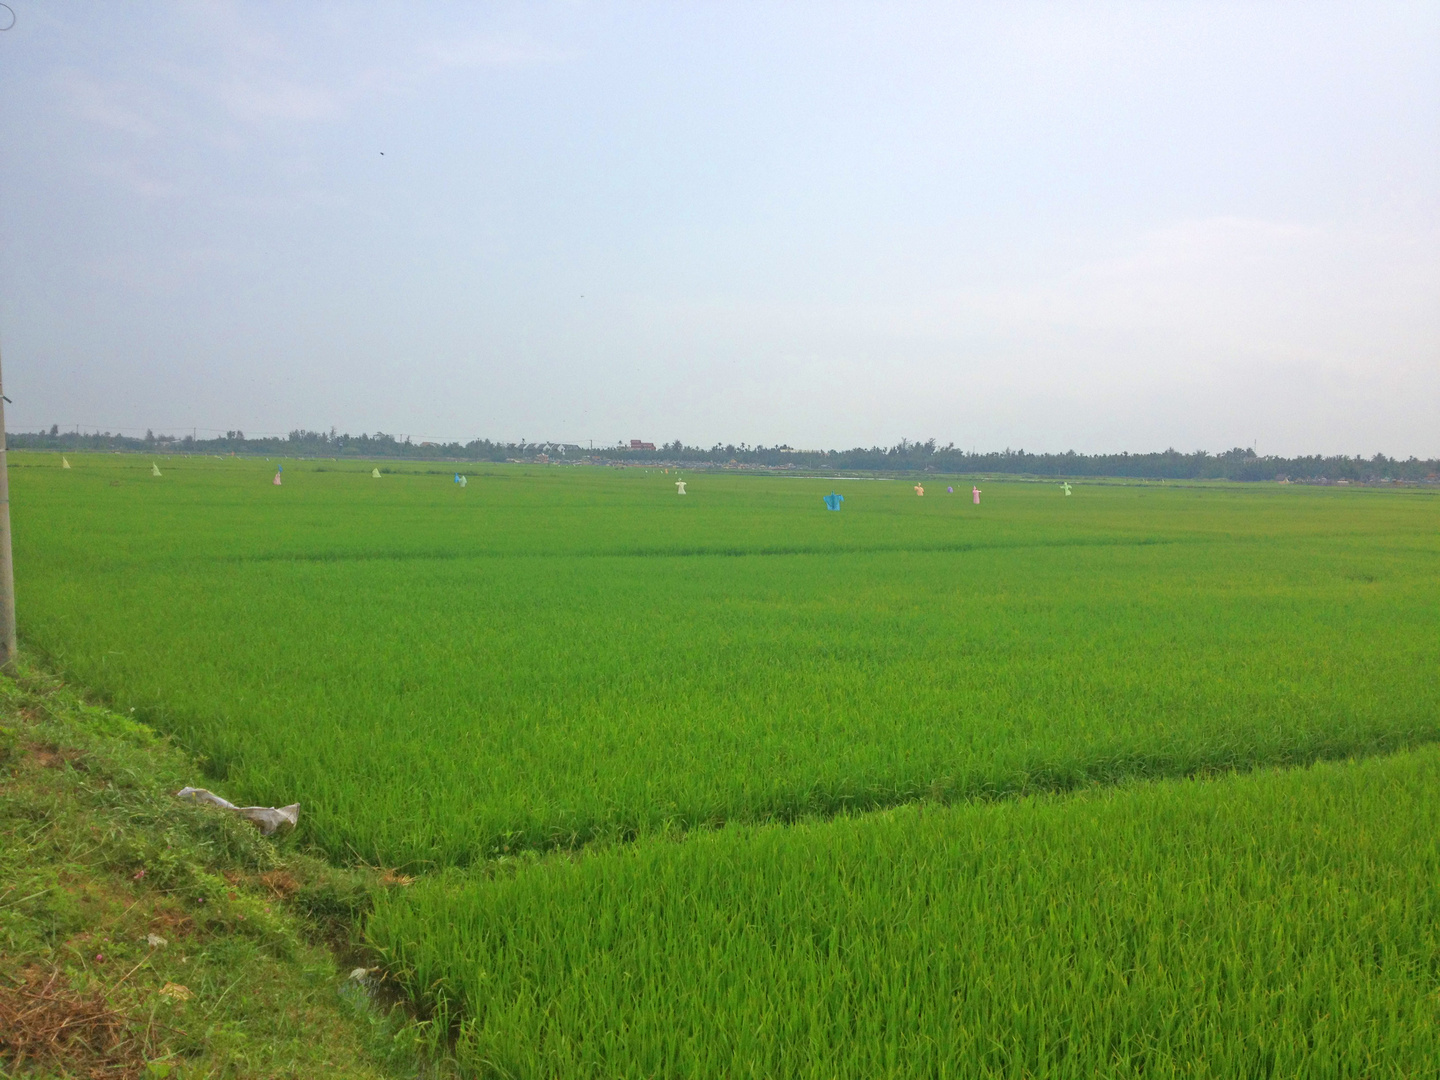 Endlose Reisfelder in der Gegend von Hoi An